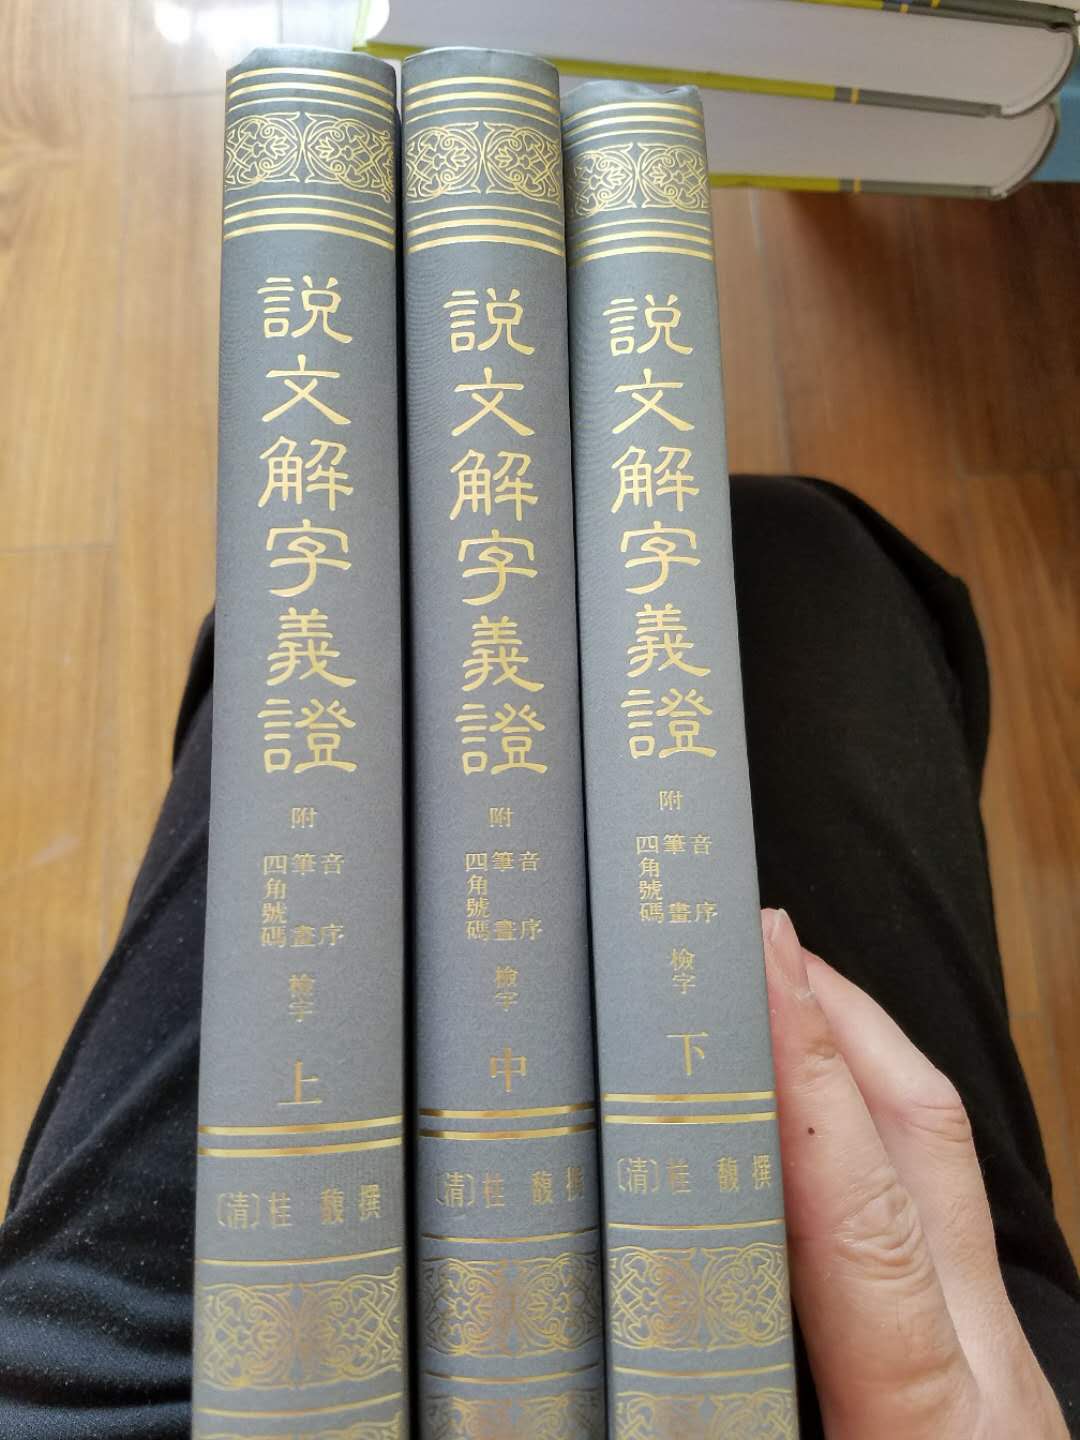 书收到了，中华书局出版，三大本，质量非常好，清说文大家桂馥大作，送货上门速度快，包装严实非常好。